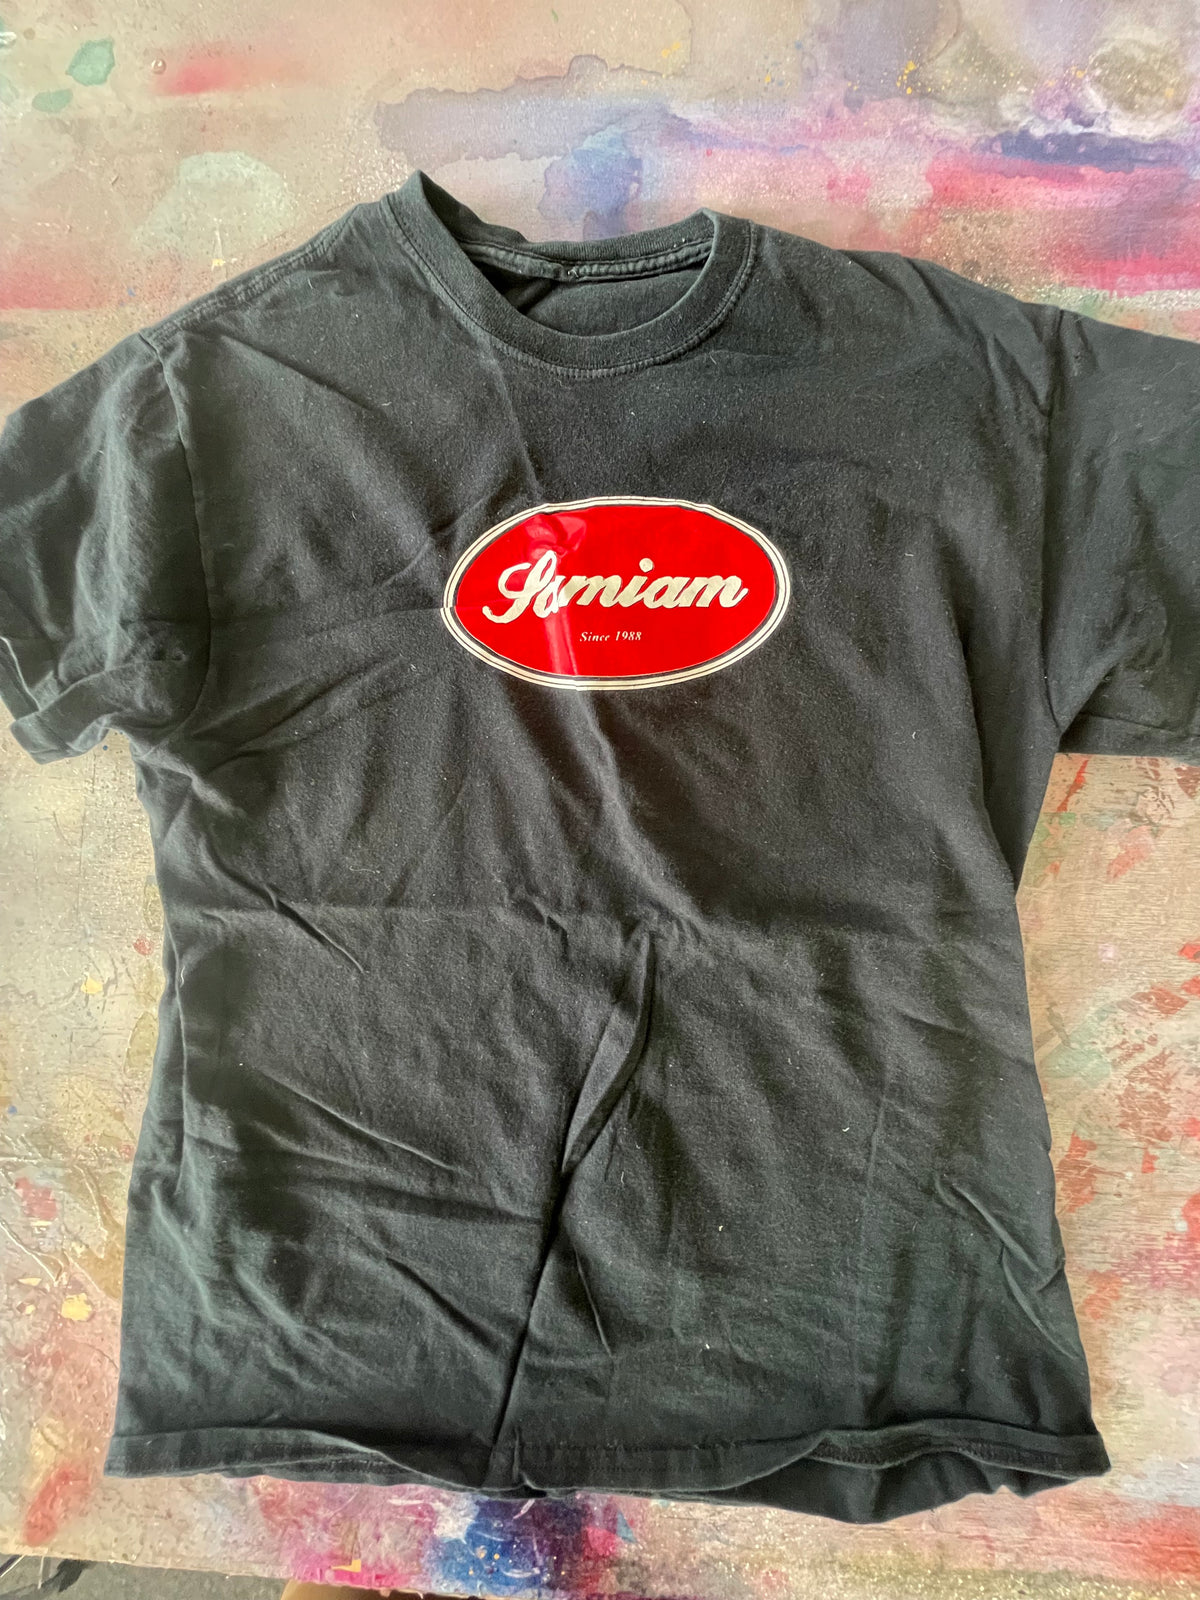 Samiam "Logo" T-Shirt